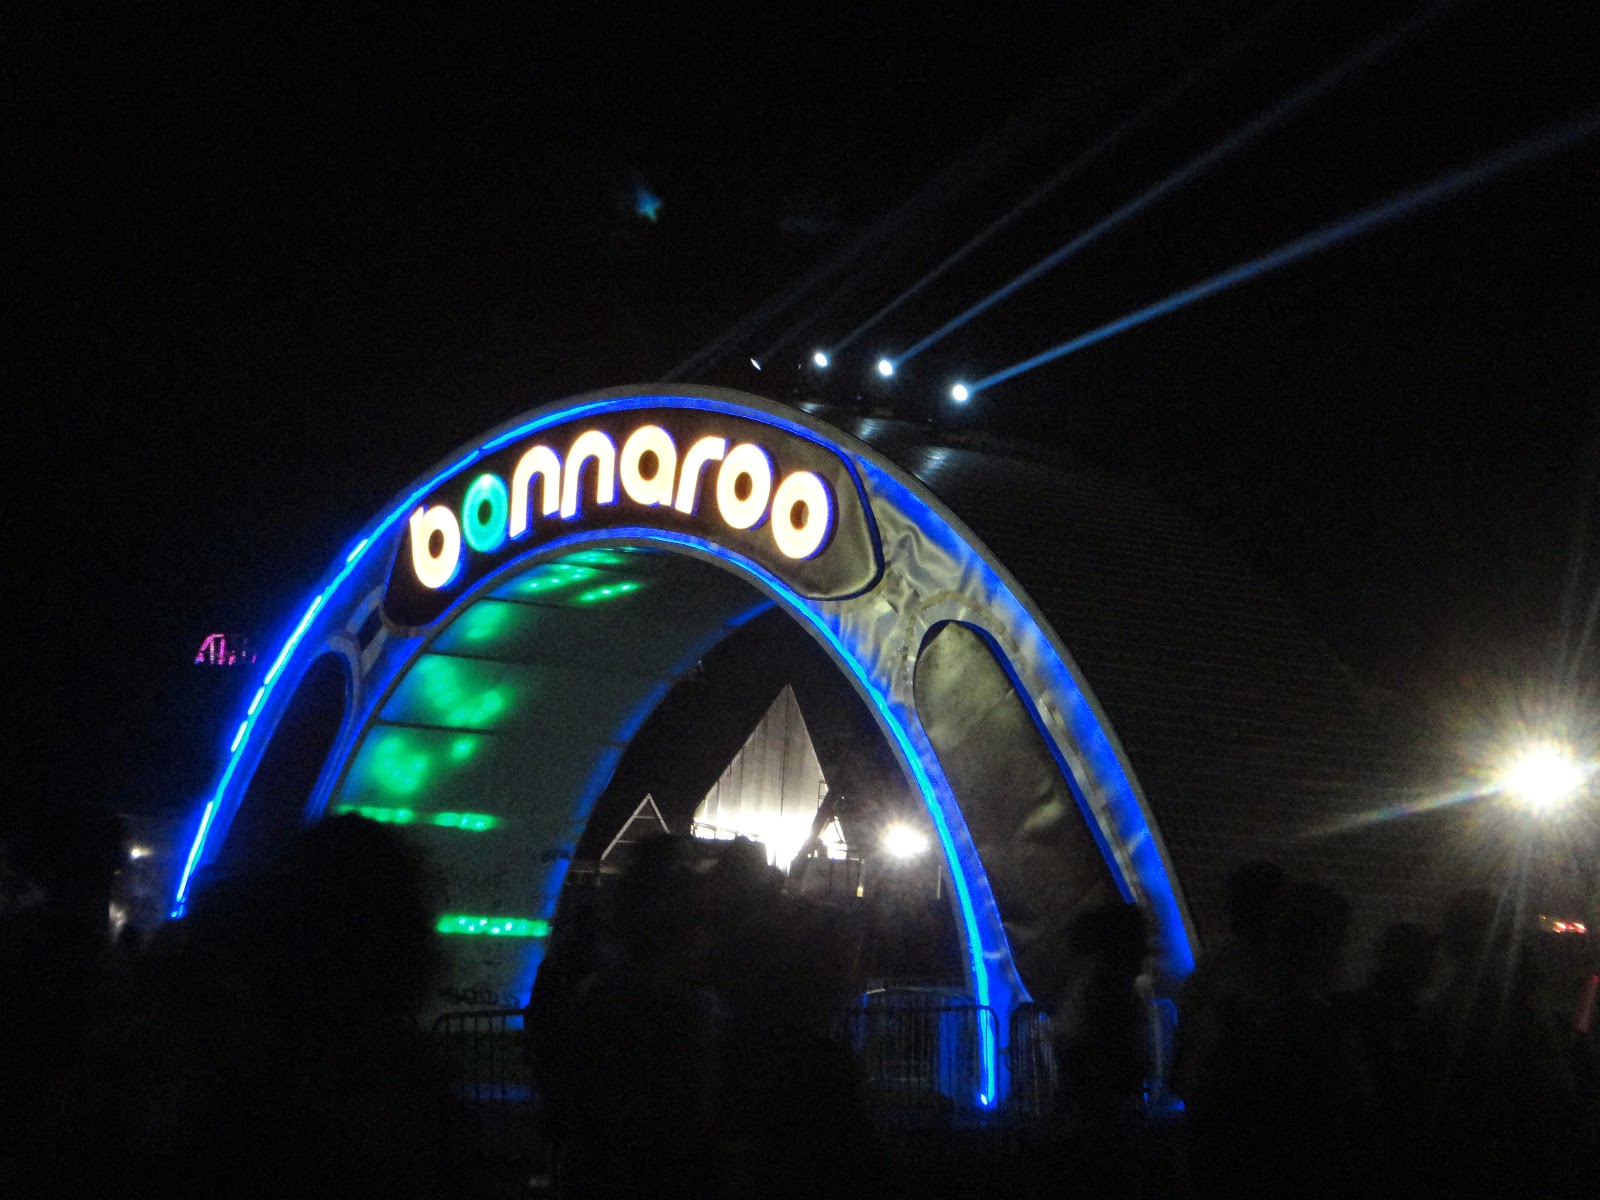 Bonnaroo Arch at night, 2013